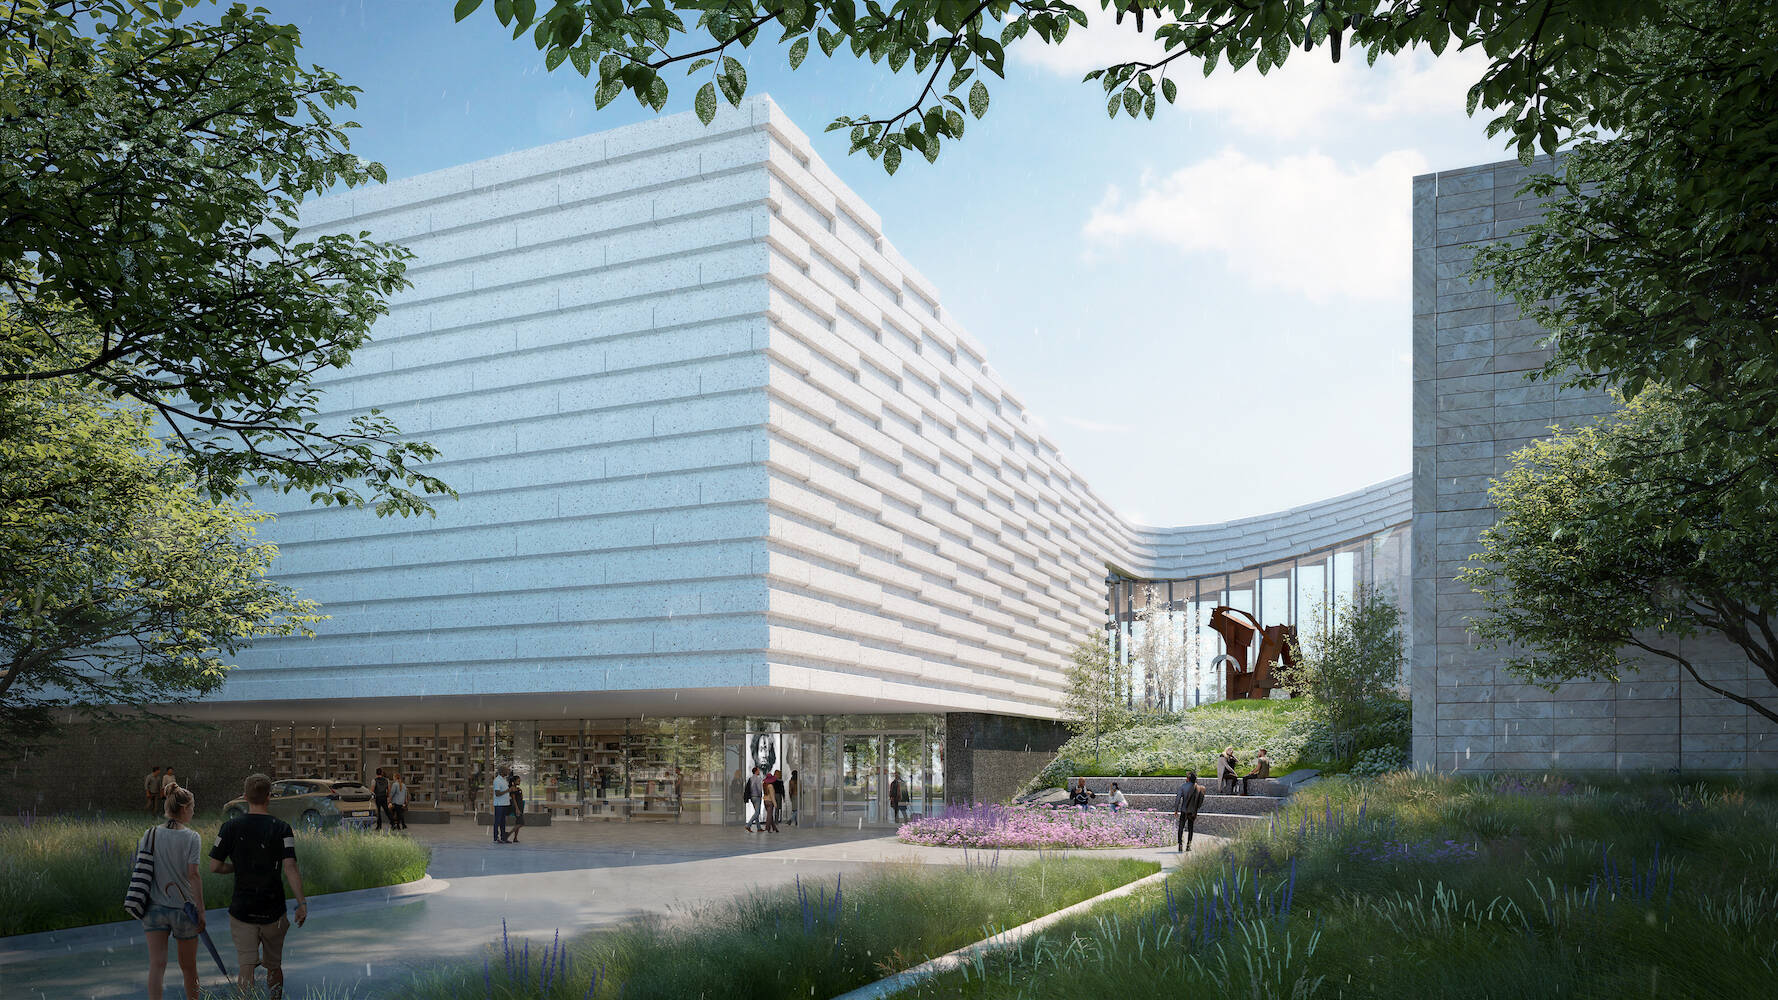 Omaha’s Joslyn Art Museum Previews New Snøhetta-Designed Wing Opening in September